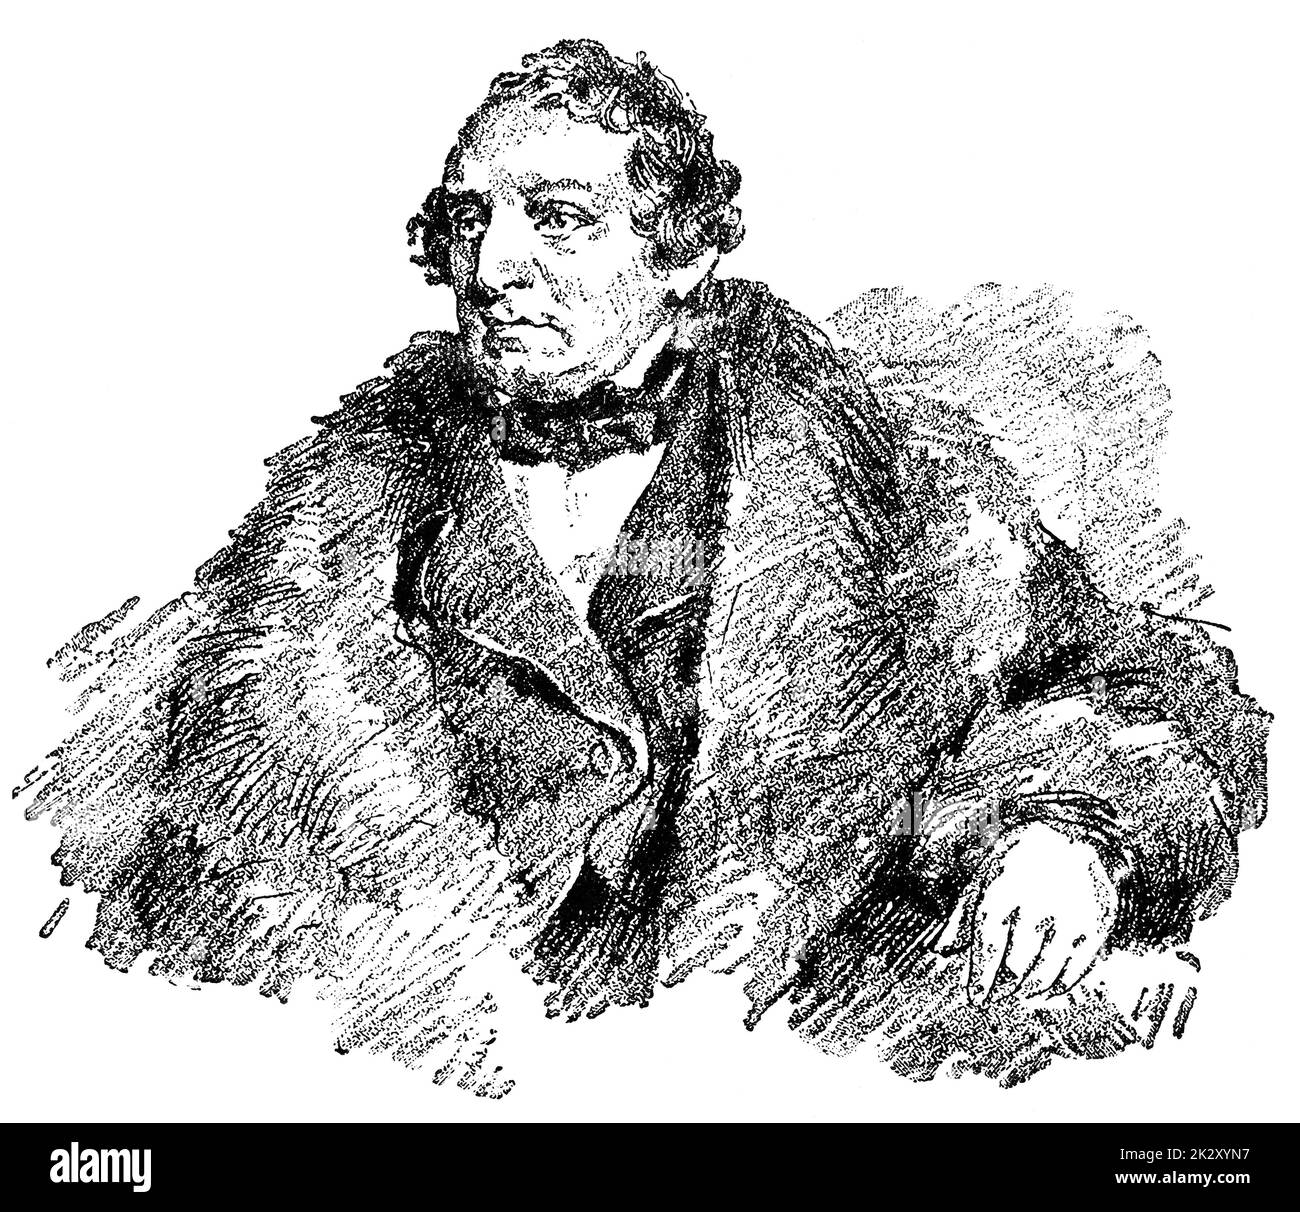 Porträt von Karl Anschutz - ein in Deutschland geborener Musikdirektor und Komponist, der die Deutsche Oper in New York City gründete. Illustration des 19. Jahrhunderts. Weißer Hintergrund. Stockfoto